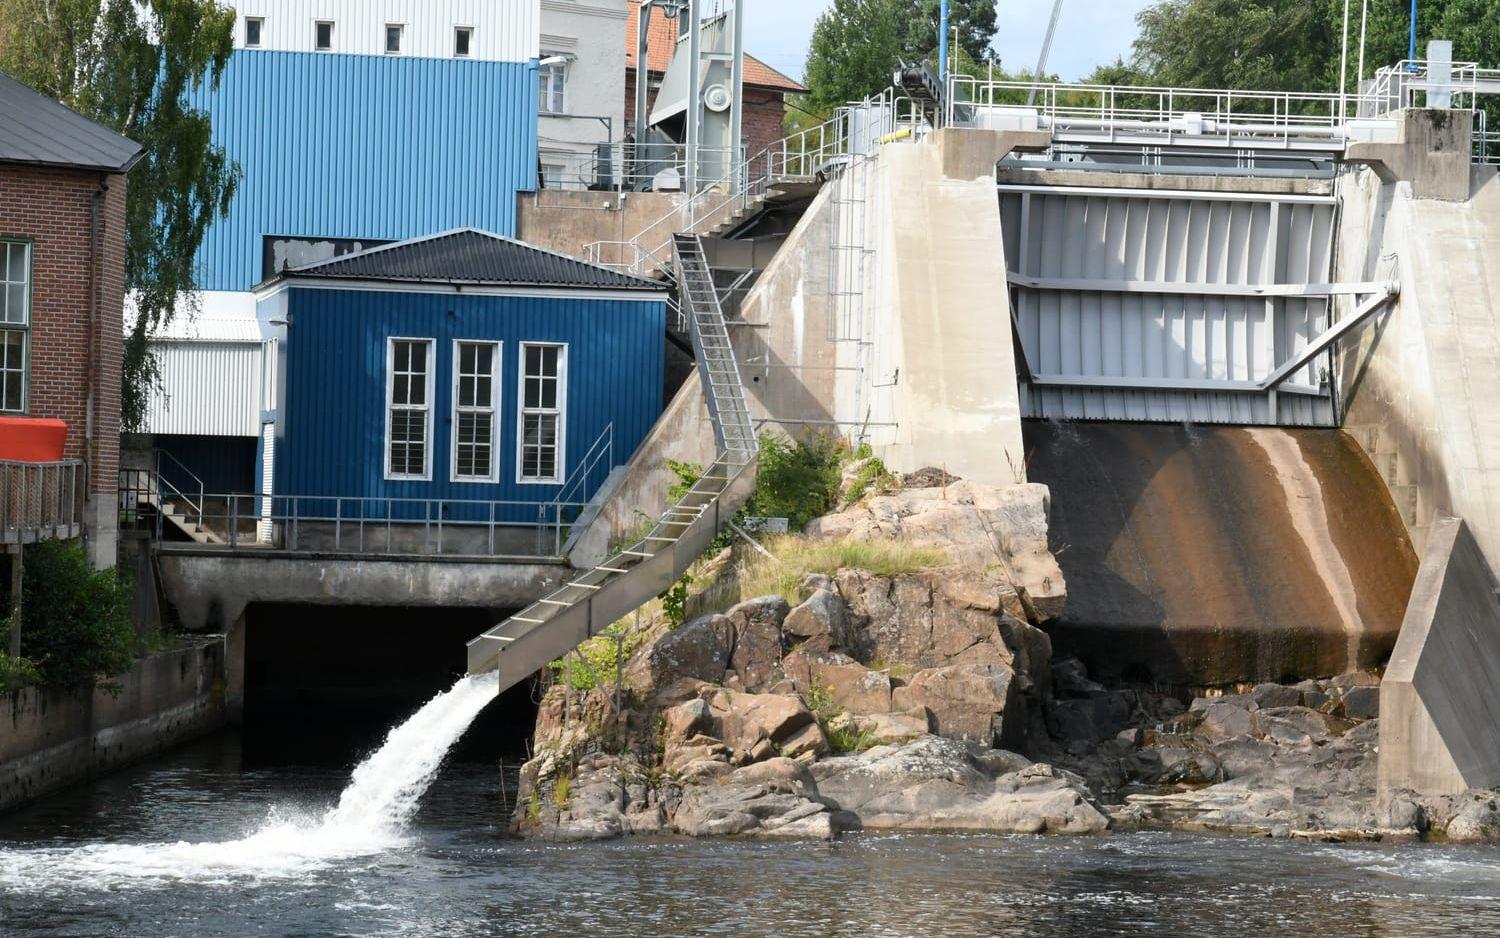 Vid kraftstationen i Hedefors är fallet tio meter, det blir ett högt språng för fiskarna att hoppa från fiskrännan. Bild: Charlotte Gad